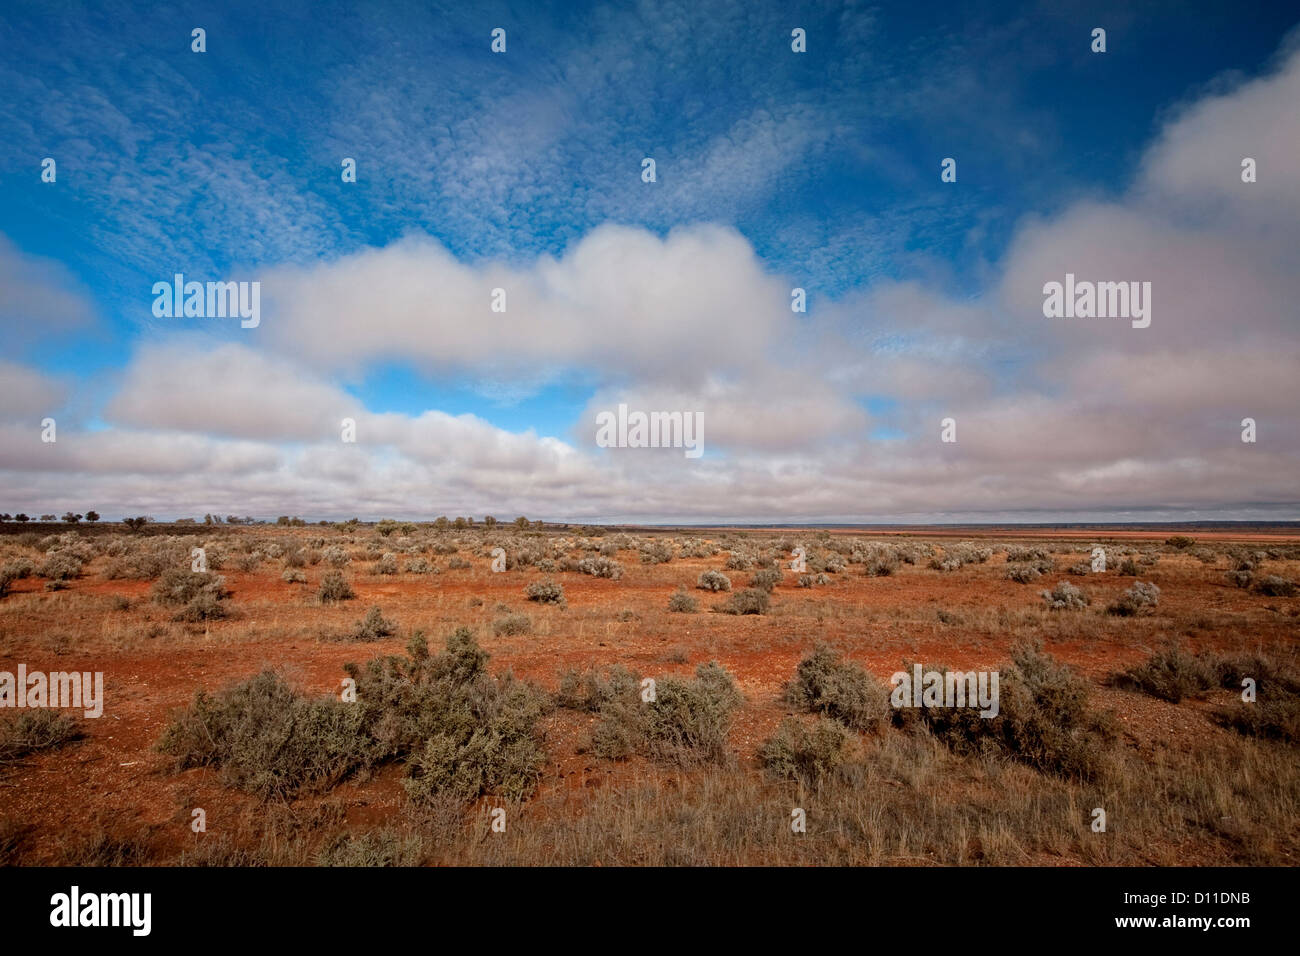 Australische Outback-Landschaft des weiten, trockenen Ebenen und strahlend blauer Himmel und einzigartige Wolkenformationen in der Nähe von Broken Hill, NSW, Australien Stockfoto